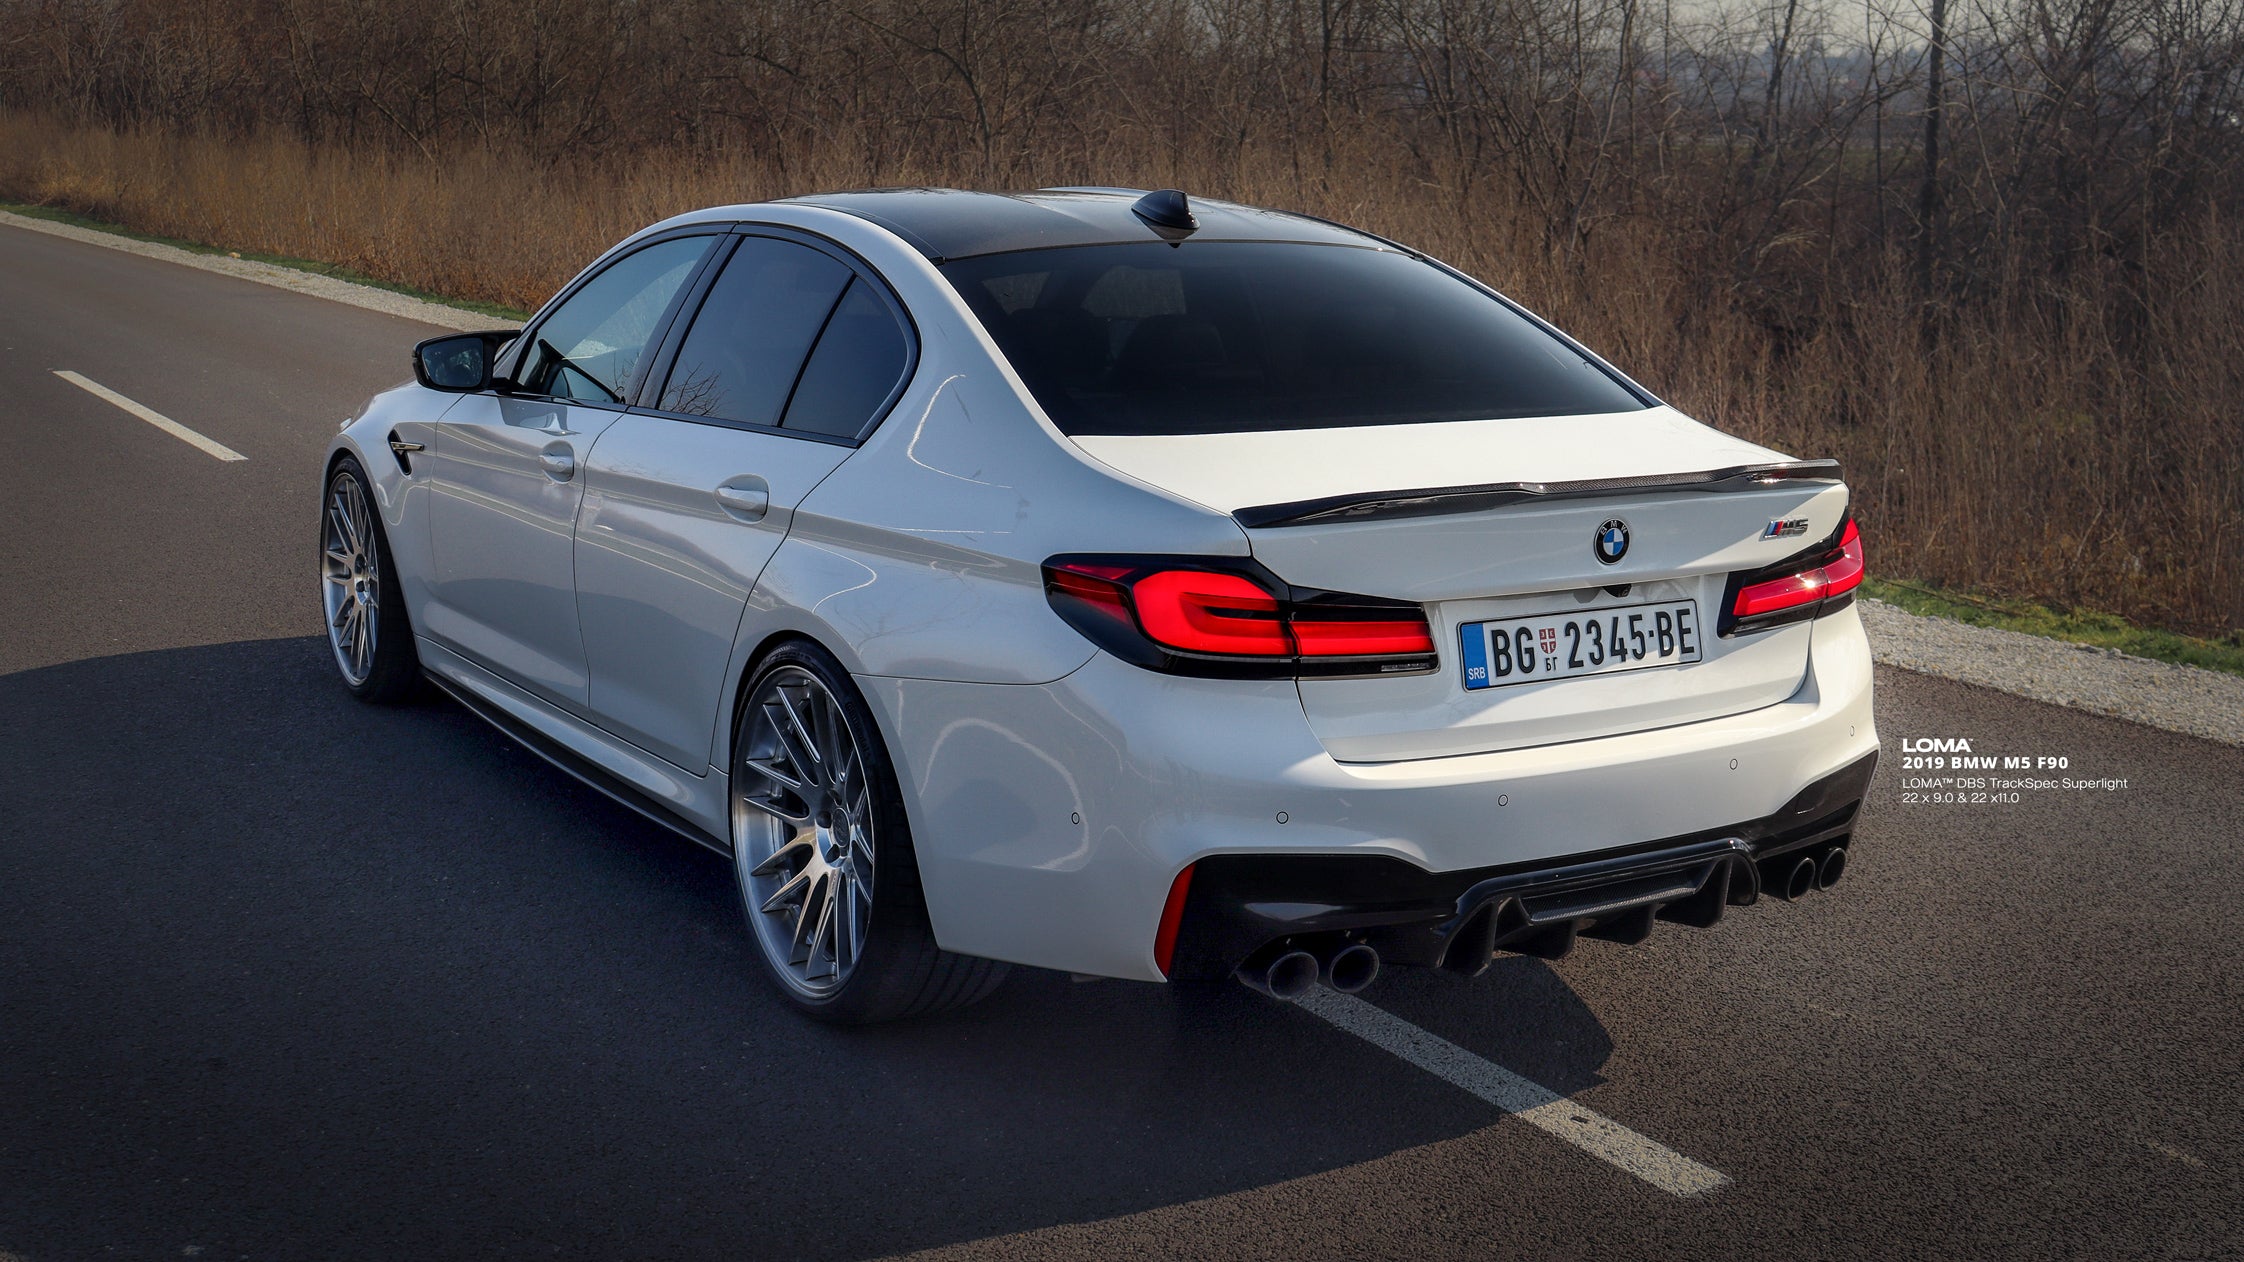 2019-BMW-M5-F90-on-LOMA-DBS-TrackSpec-Custom-Forged-Alloy-Wheels-4